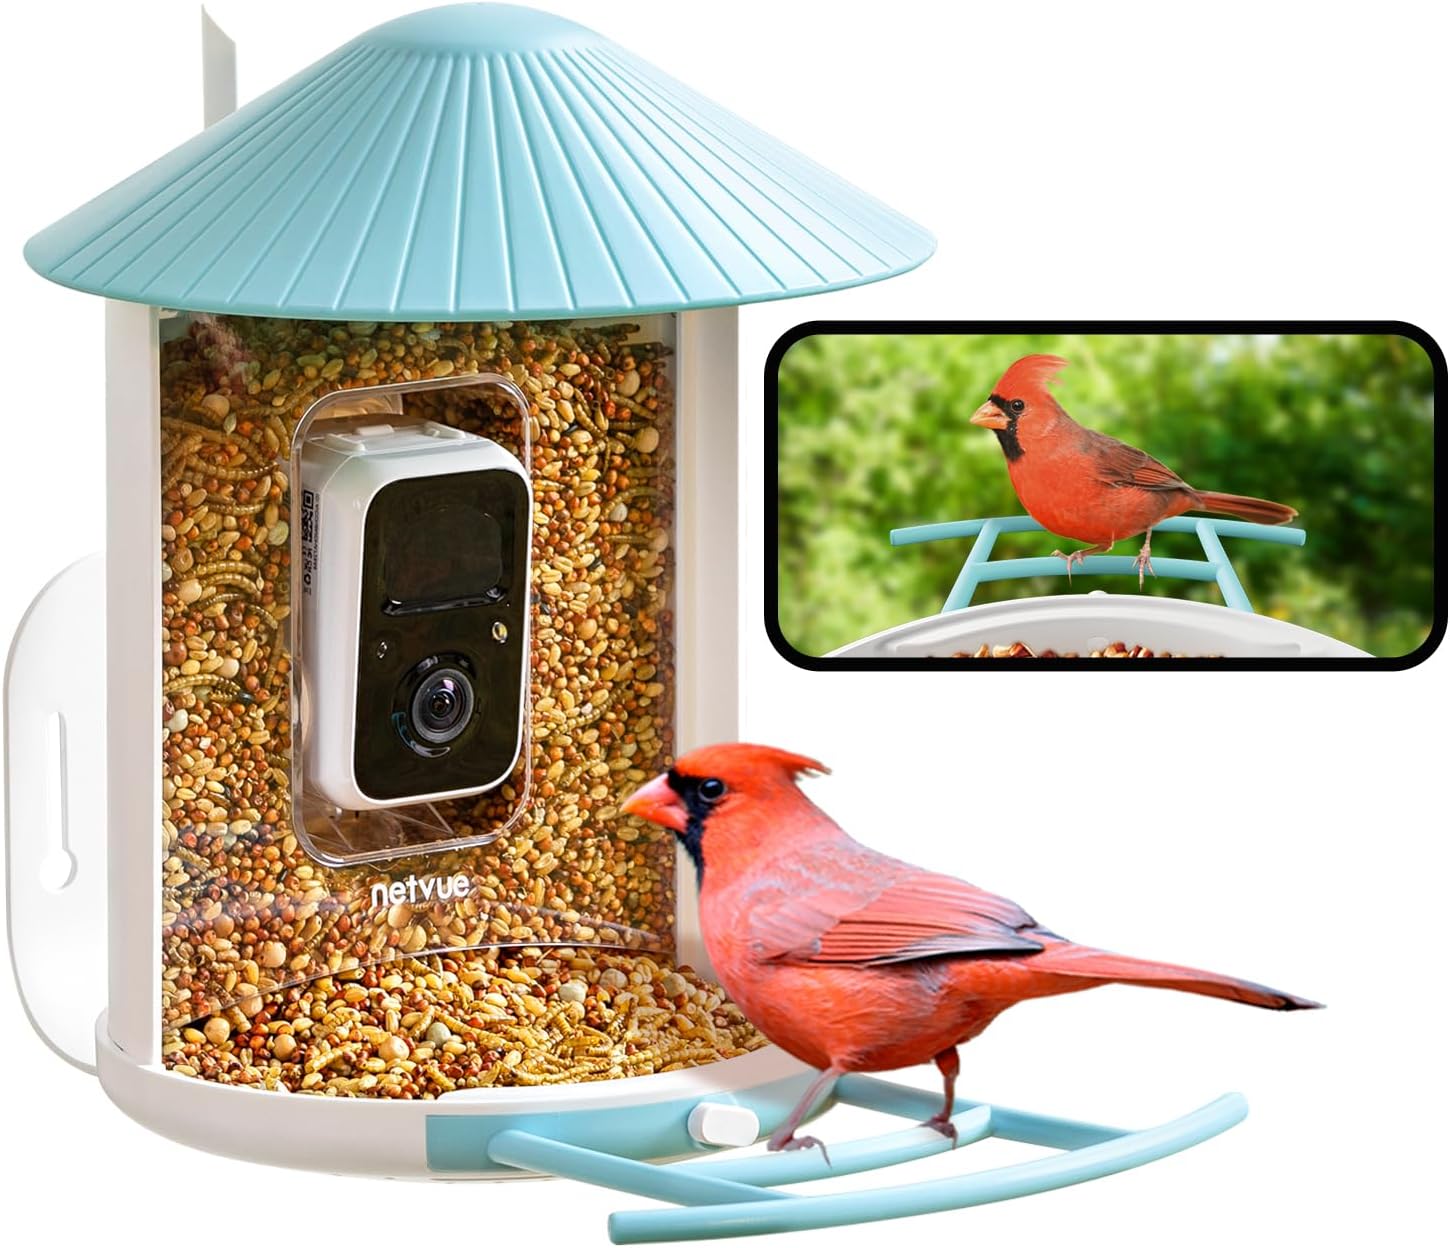 NETVUE Birdfy® Smart Bird Feeder with Camera, Bird Watching Camera, Auto Capture Bird Videos & Motion Detection, Wireless Camera Ideal Gift for Bird Lover (Lite)